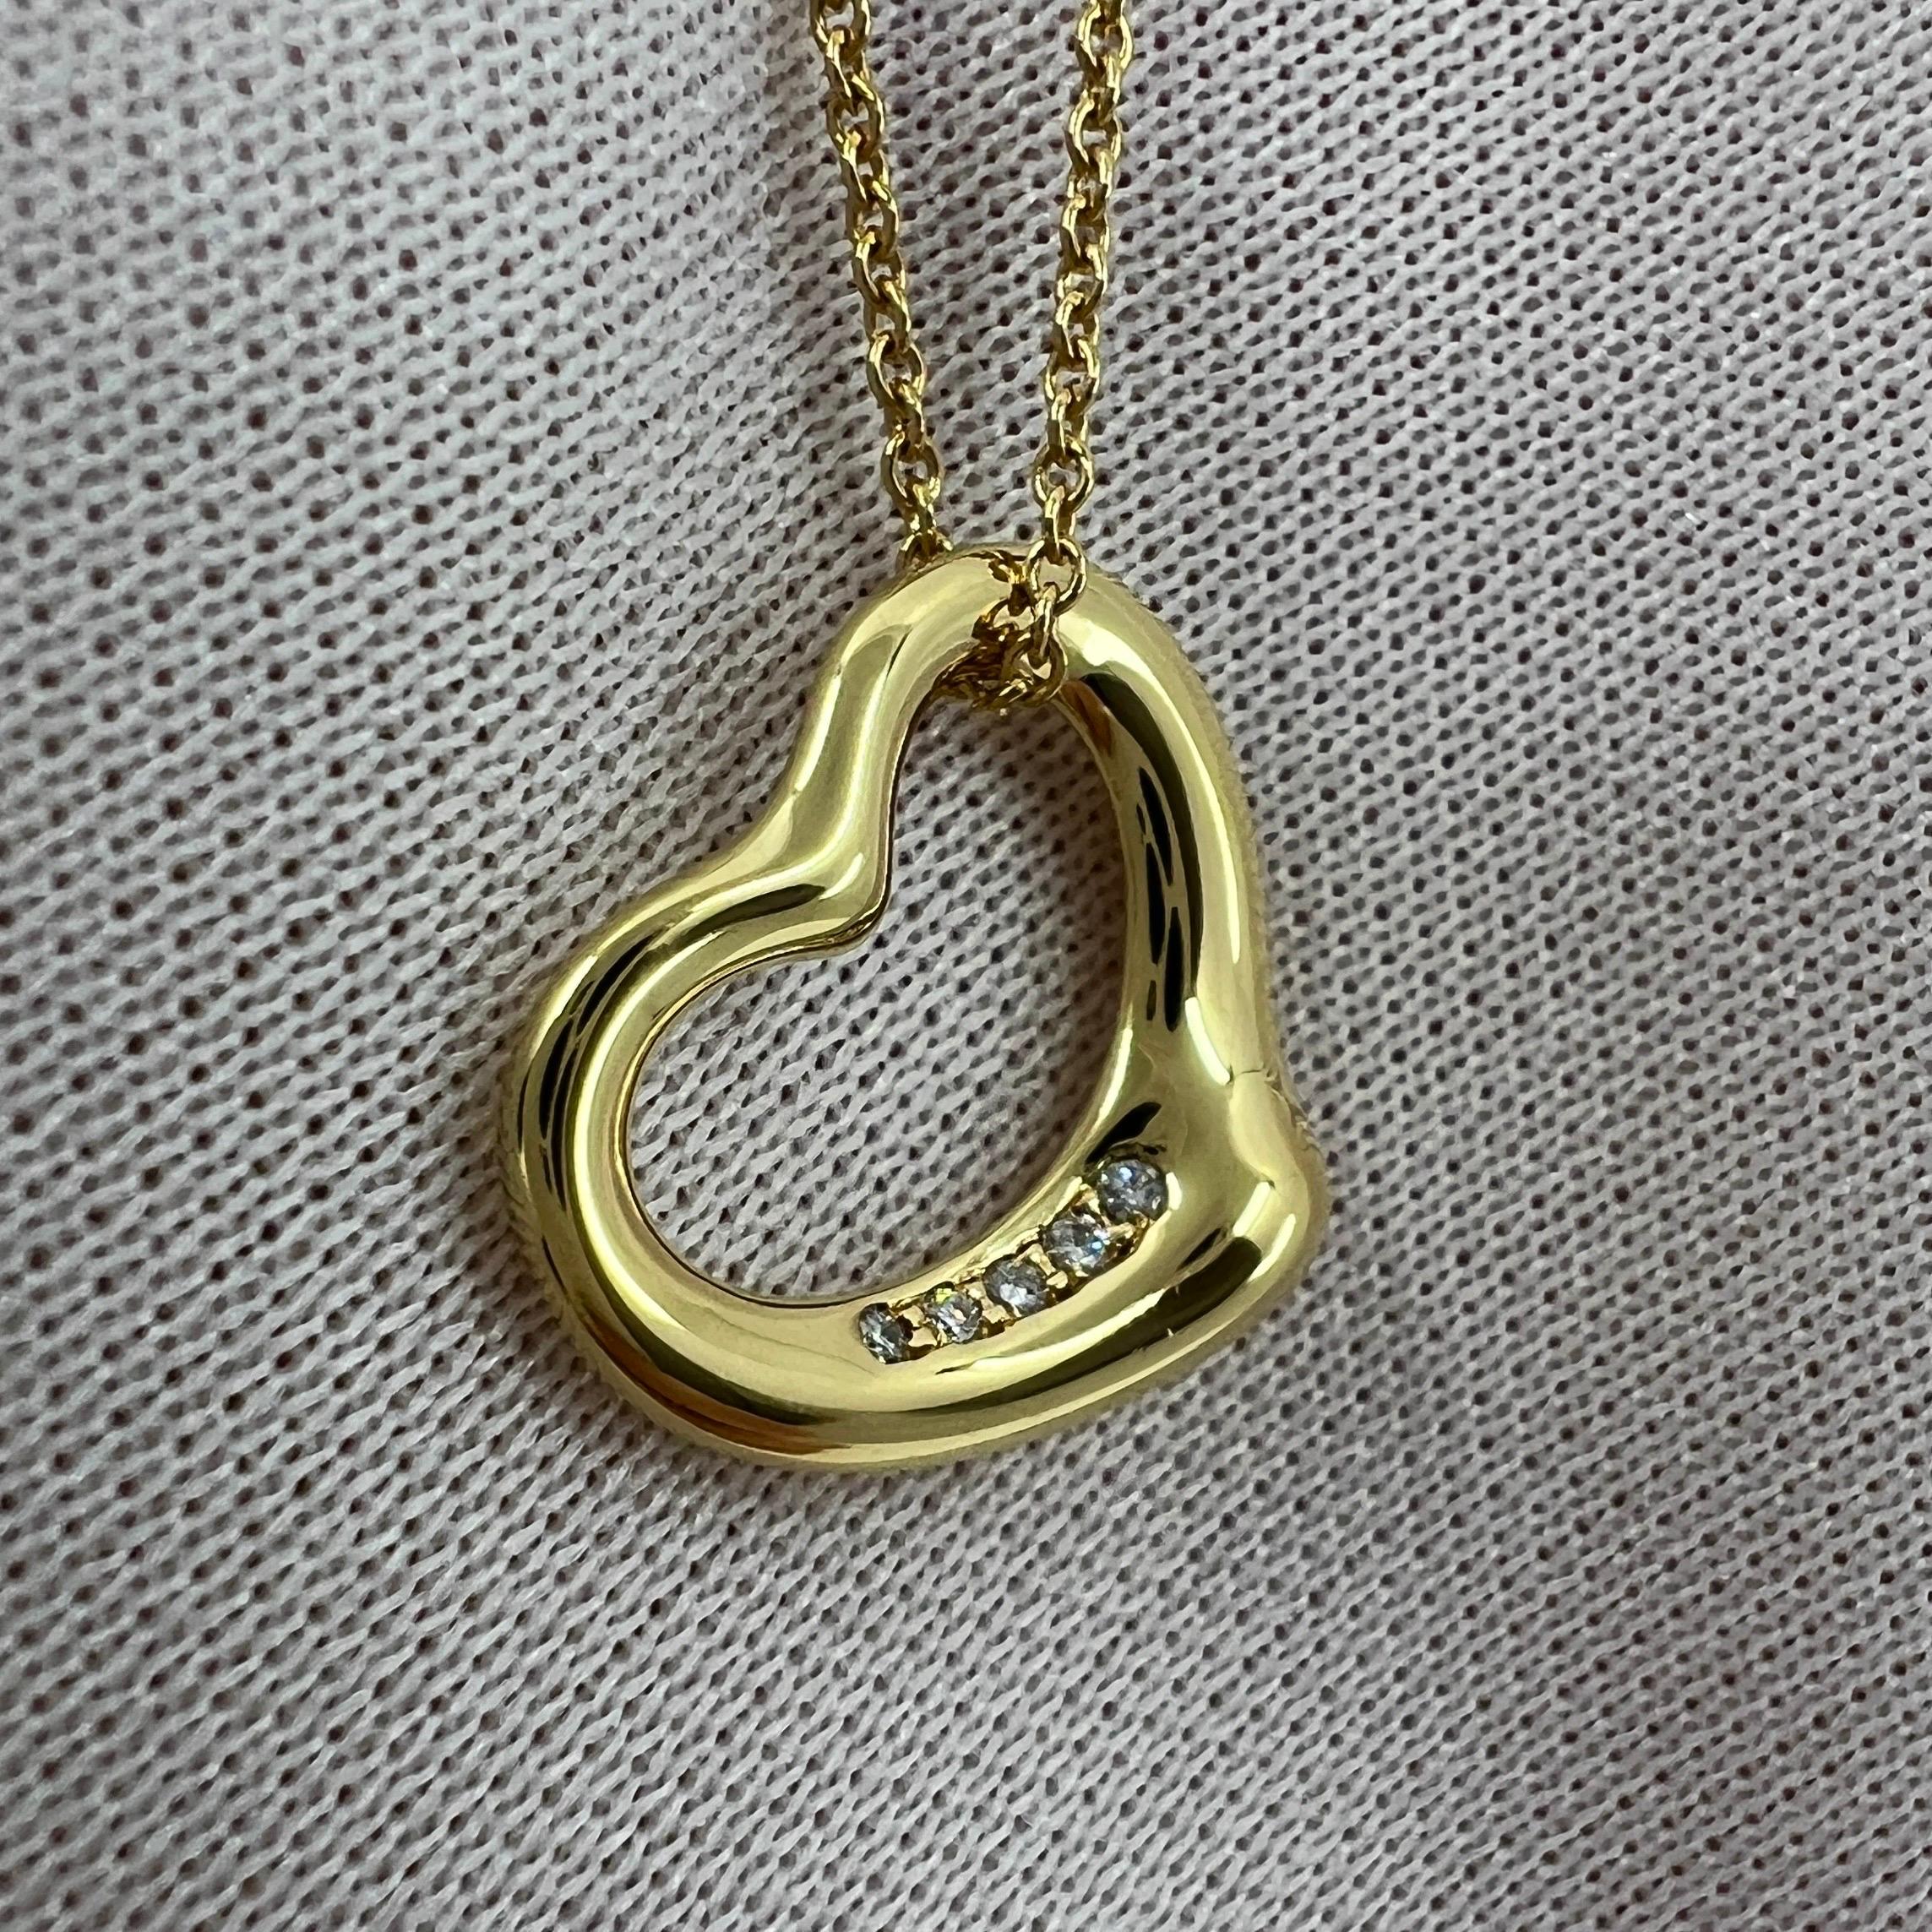 Tiffany & Co. Elsa Peretti Open Heart Diamond 18k Yellow Gold Pendant Necklace For Sale 3